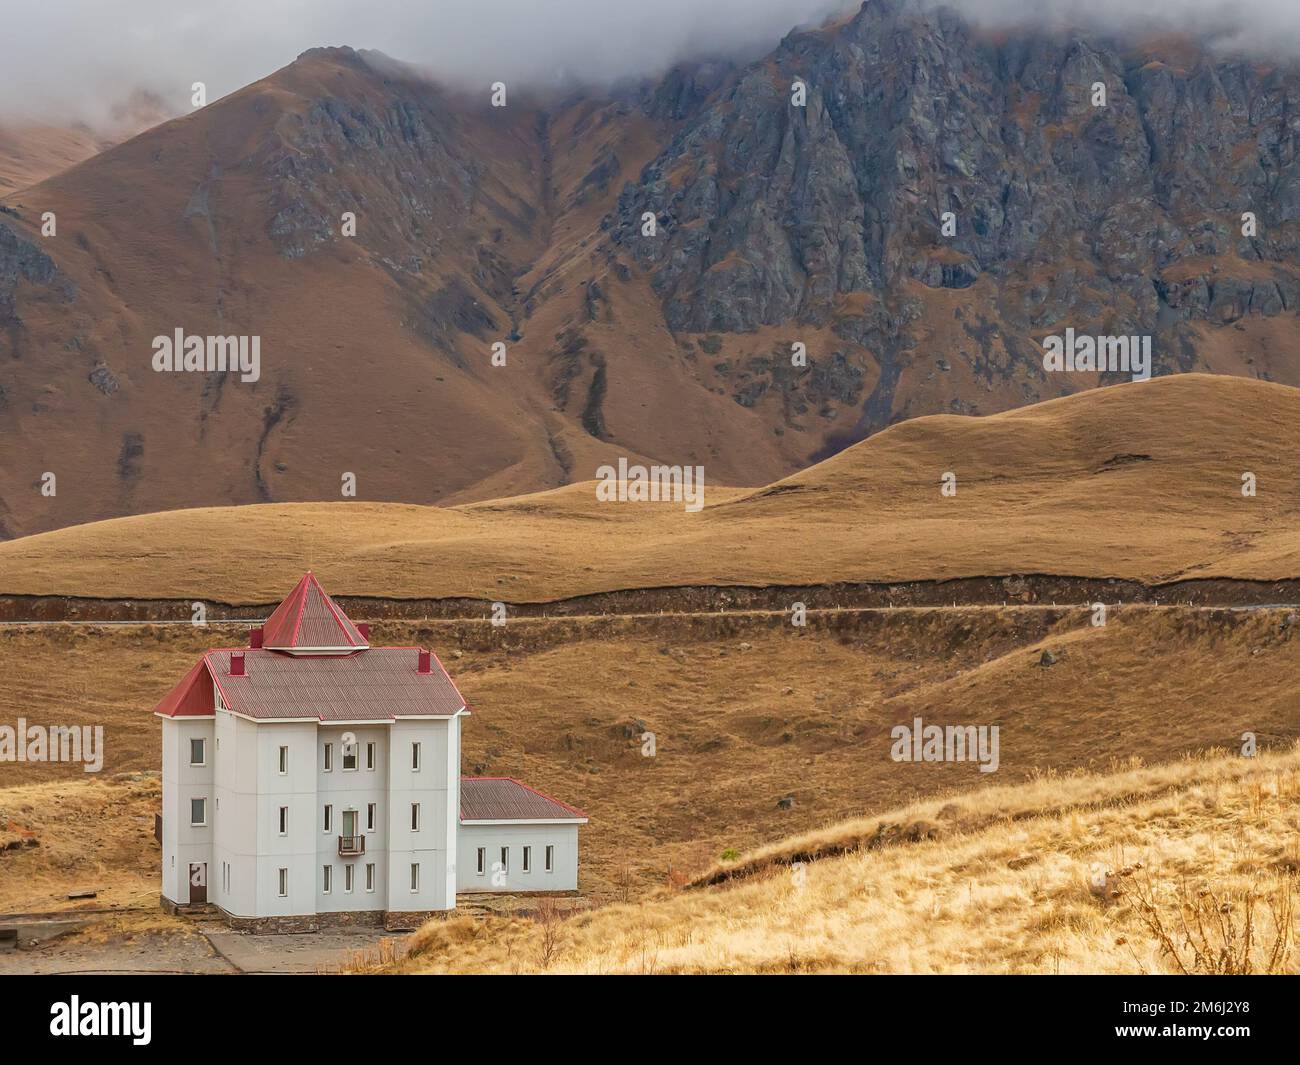 Alta nelle montagne autunnali del Caucaso, dove le nuvole giacciono sulle cime, vi è una casa bianca con strette finestre e. Foto Stock